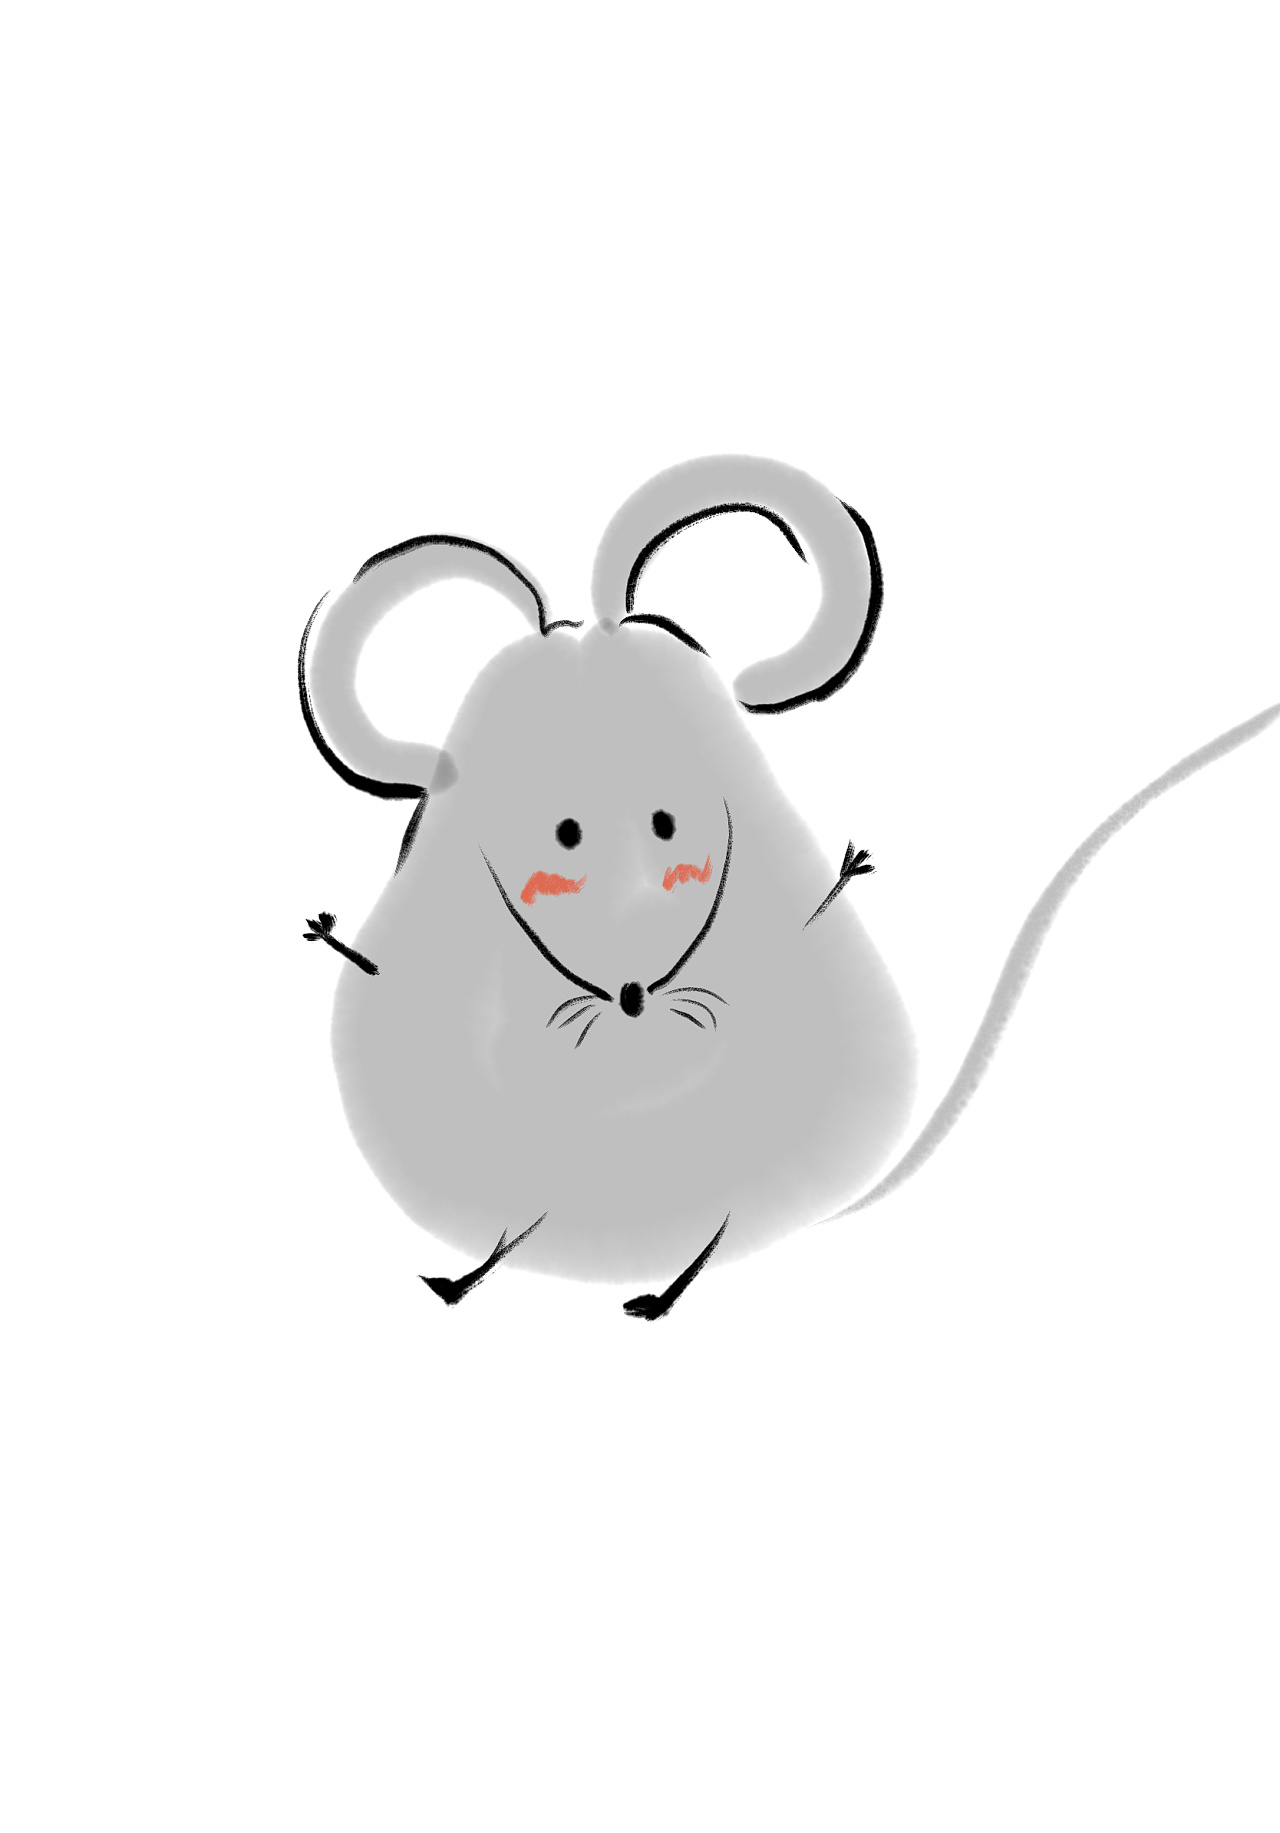 老鼠圖片卡通 – Johnyi